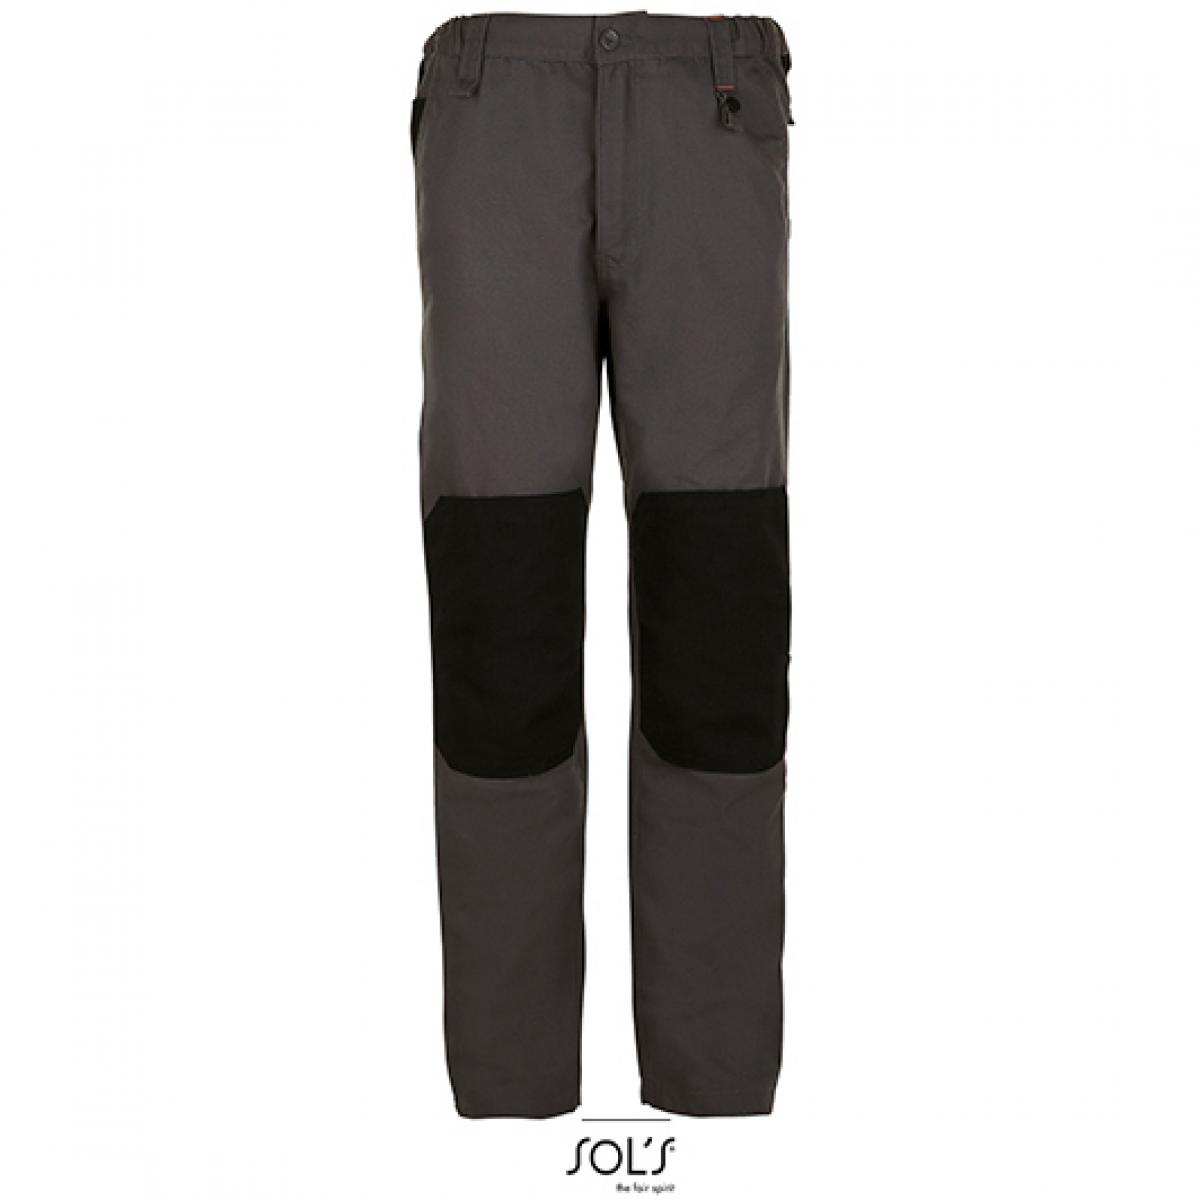 Hersteller: SOLs ProWear Herstellernummer: 01560 Artikelbezeichnung: Men´s Workwear Trousers - Metal Pro Arbeitshose Farbe: Dark Grey (Solid)/Black